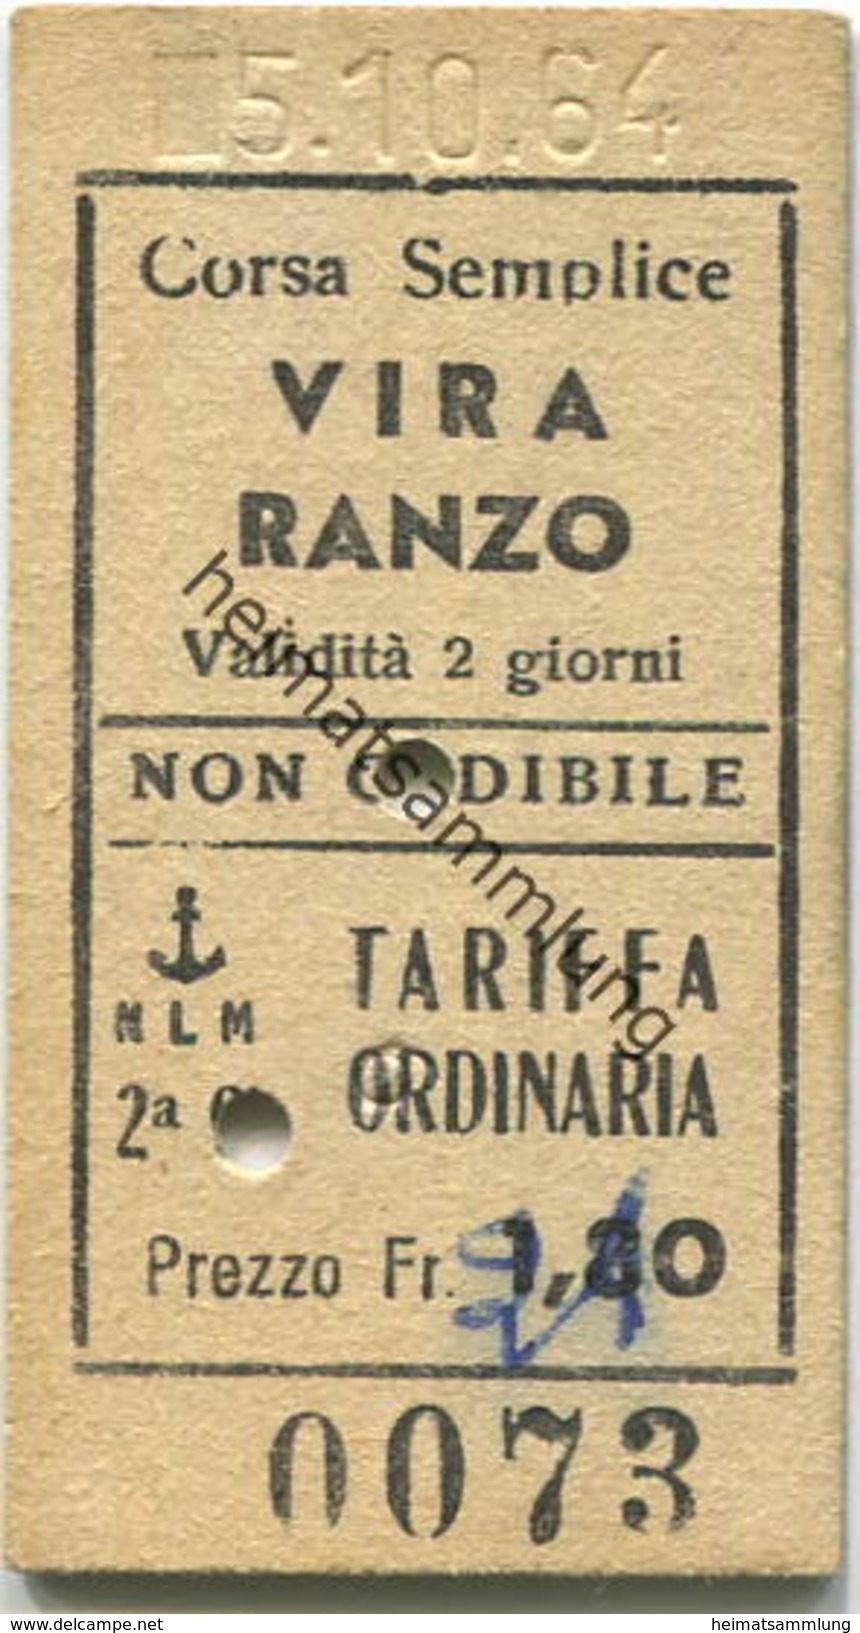 Schweiz - NLM Vira Ranzo - Fahrkarte 1964 - Europe